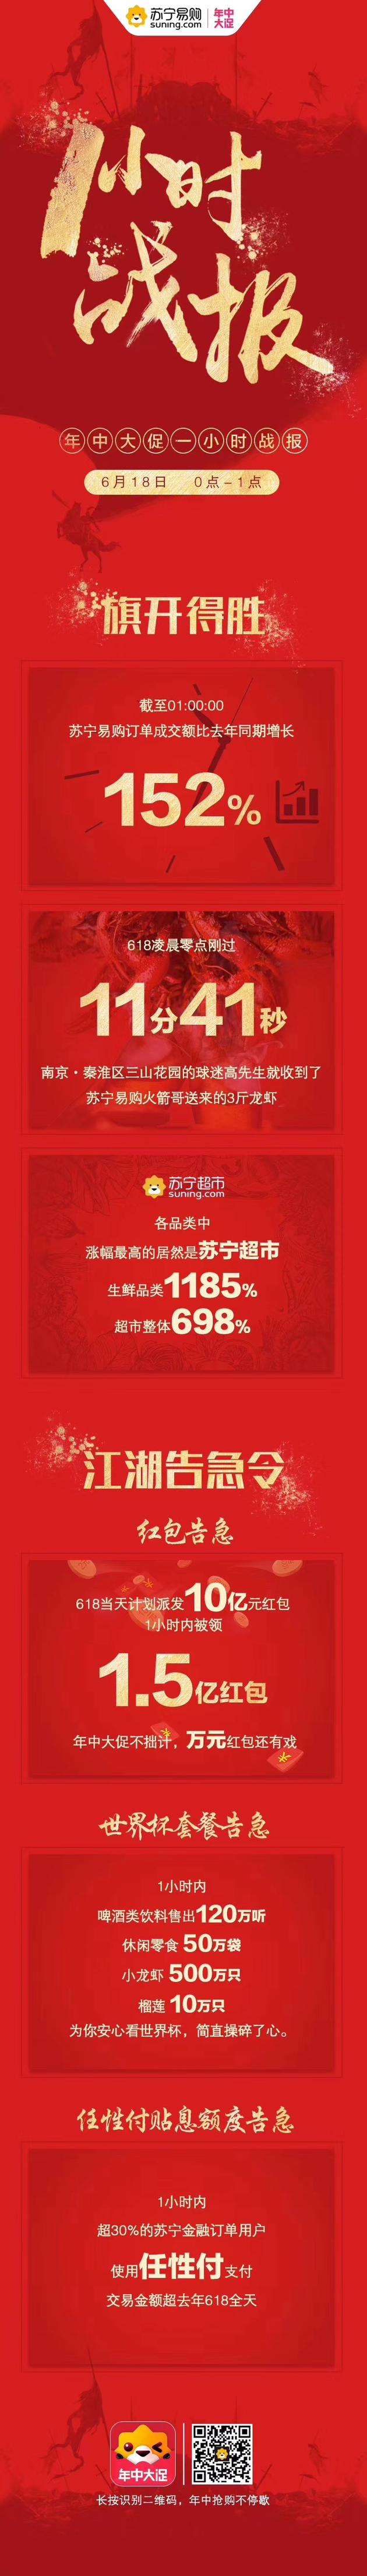 直击|苏宁发布618战报 1小时内成交额同比增152%